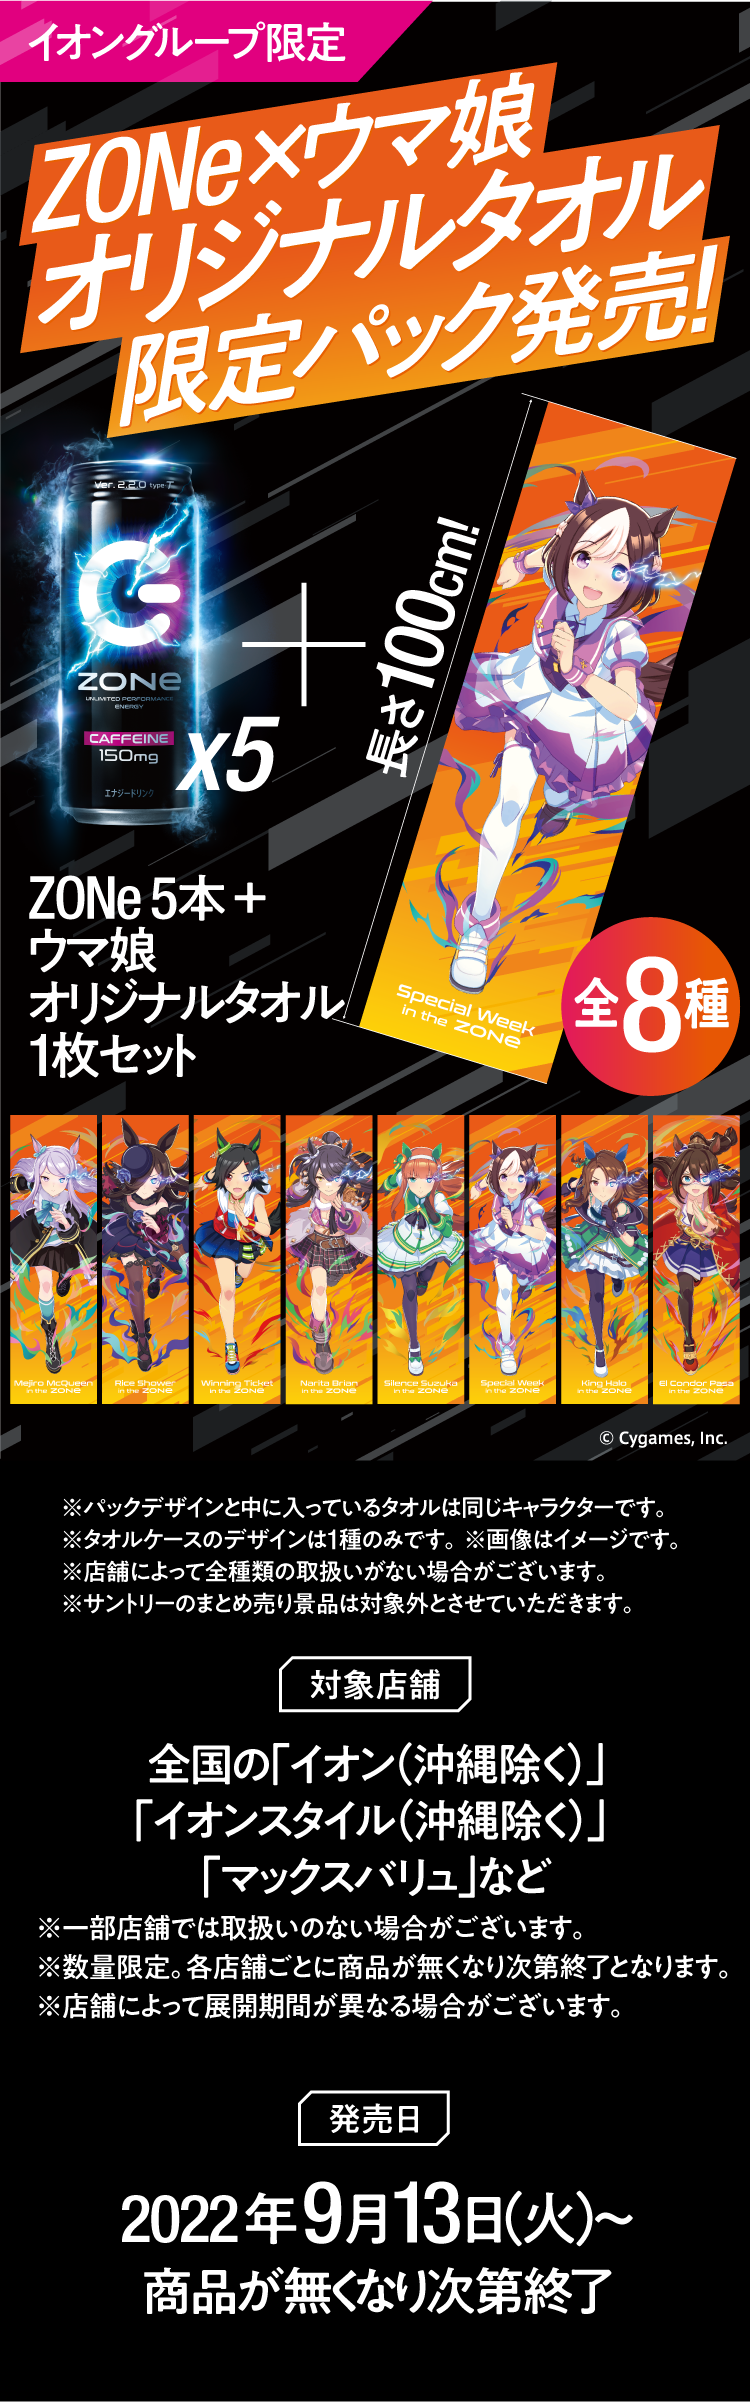 イオングループ限定 ZONe×ウマ娘オリジナルタオル限定パック発売 